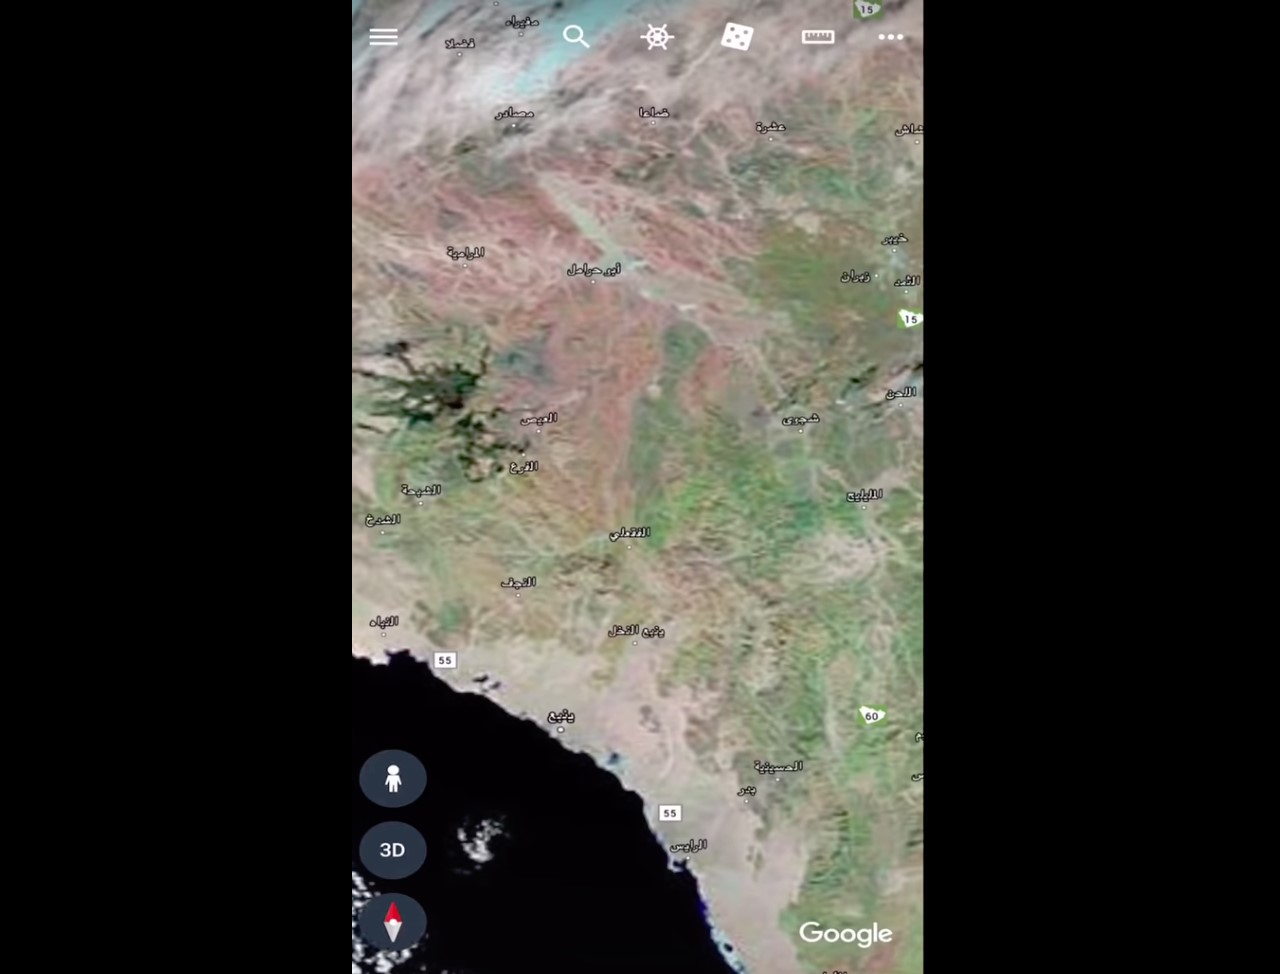 فيديو #ناسا .. غطاء نباتي يكسو جبال وأودية المدينة المنورة